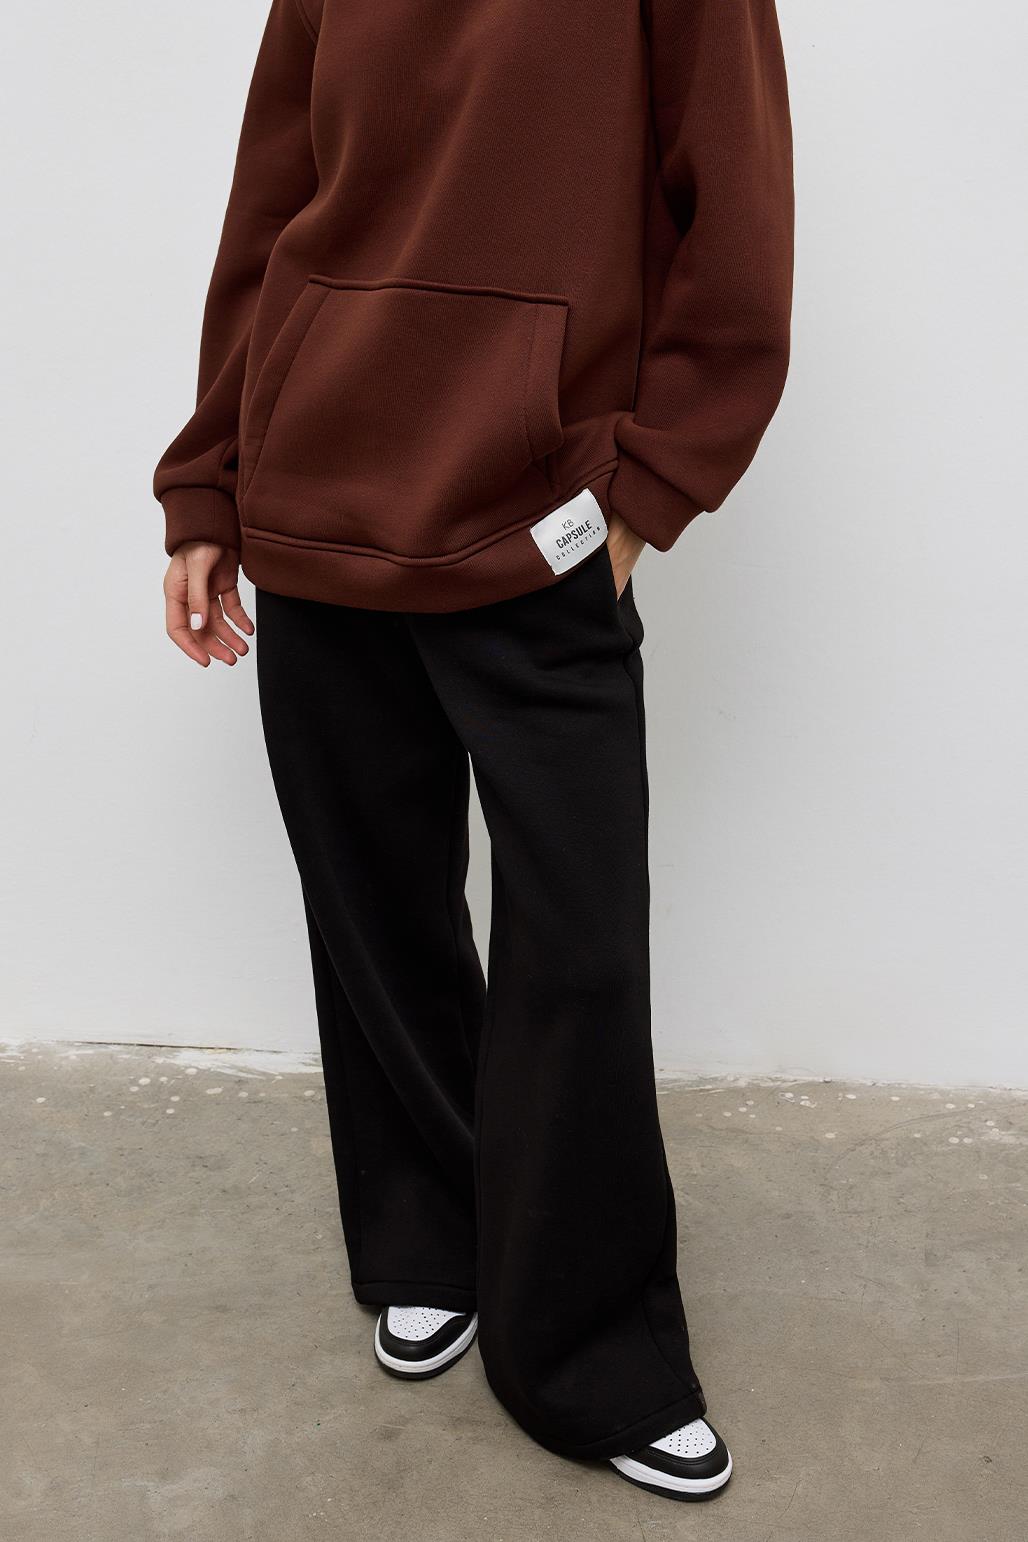 Fleece Hooded Sweatshirt With Pocket Brown